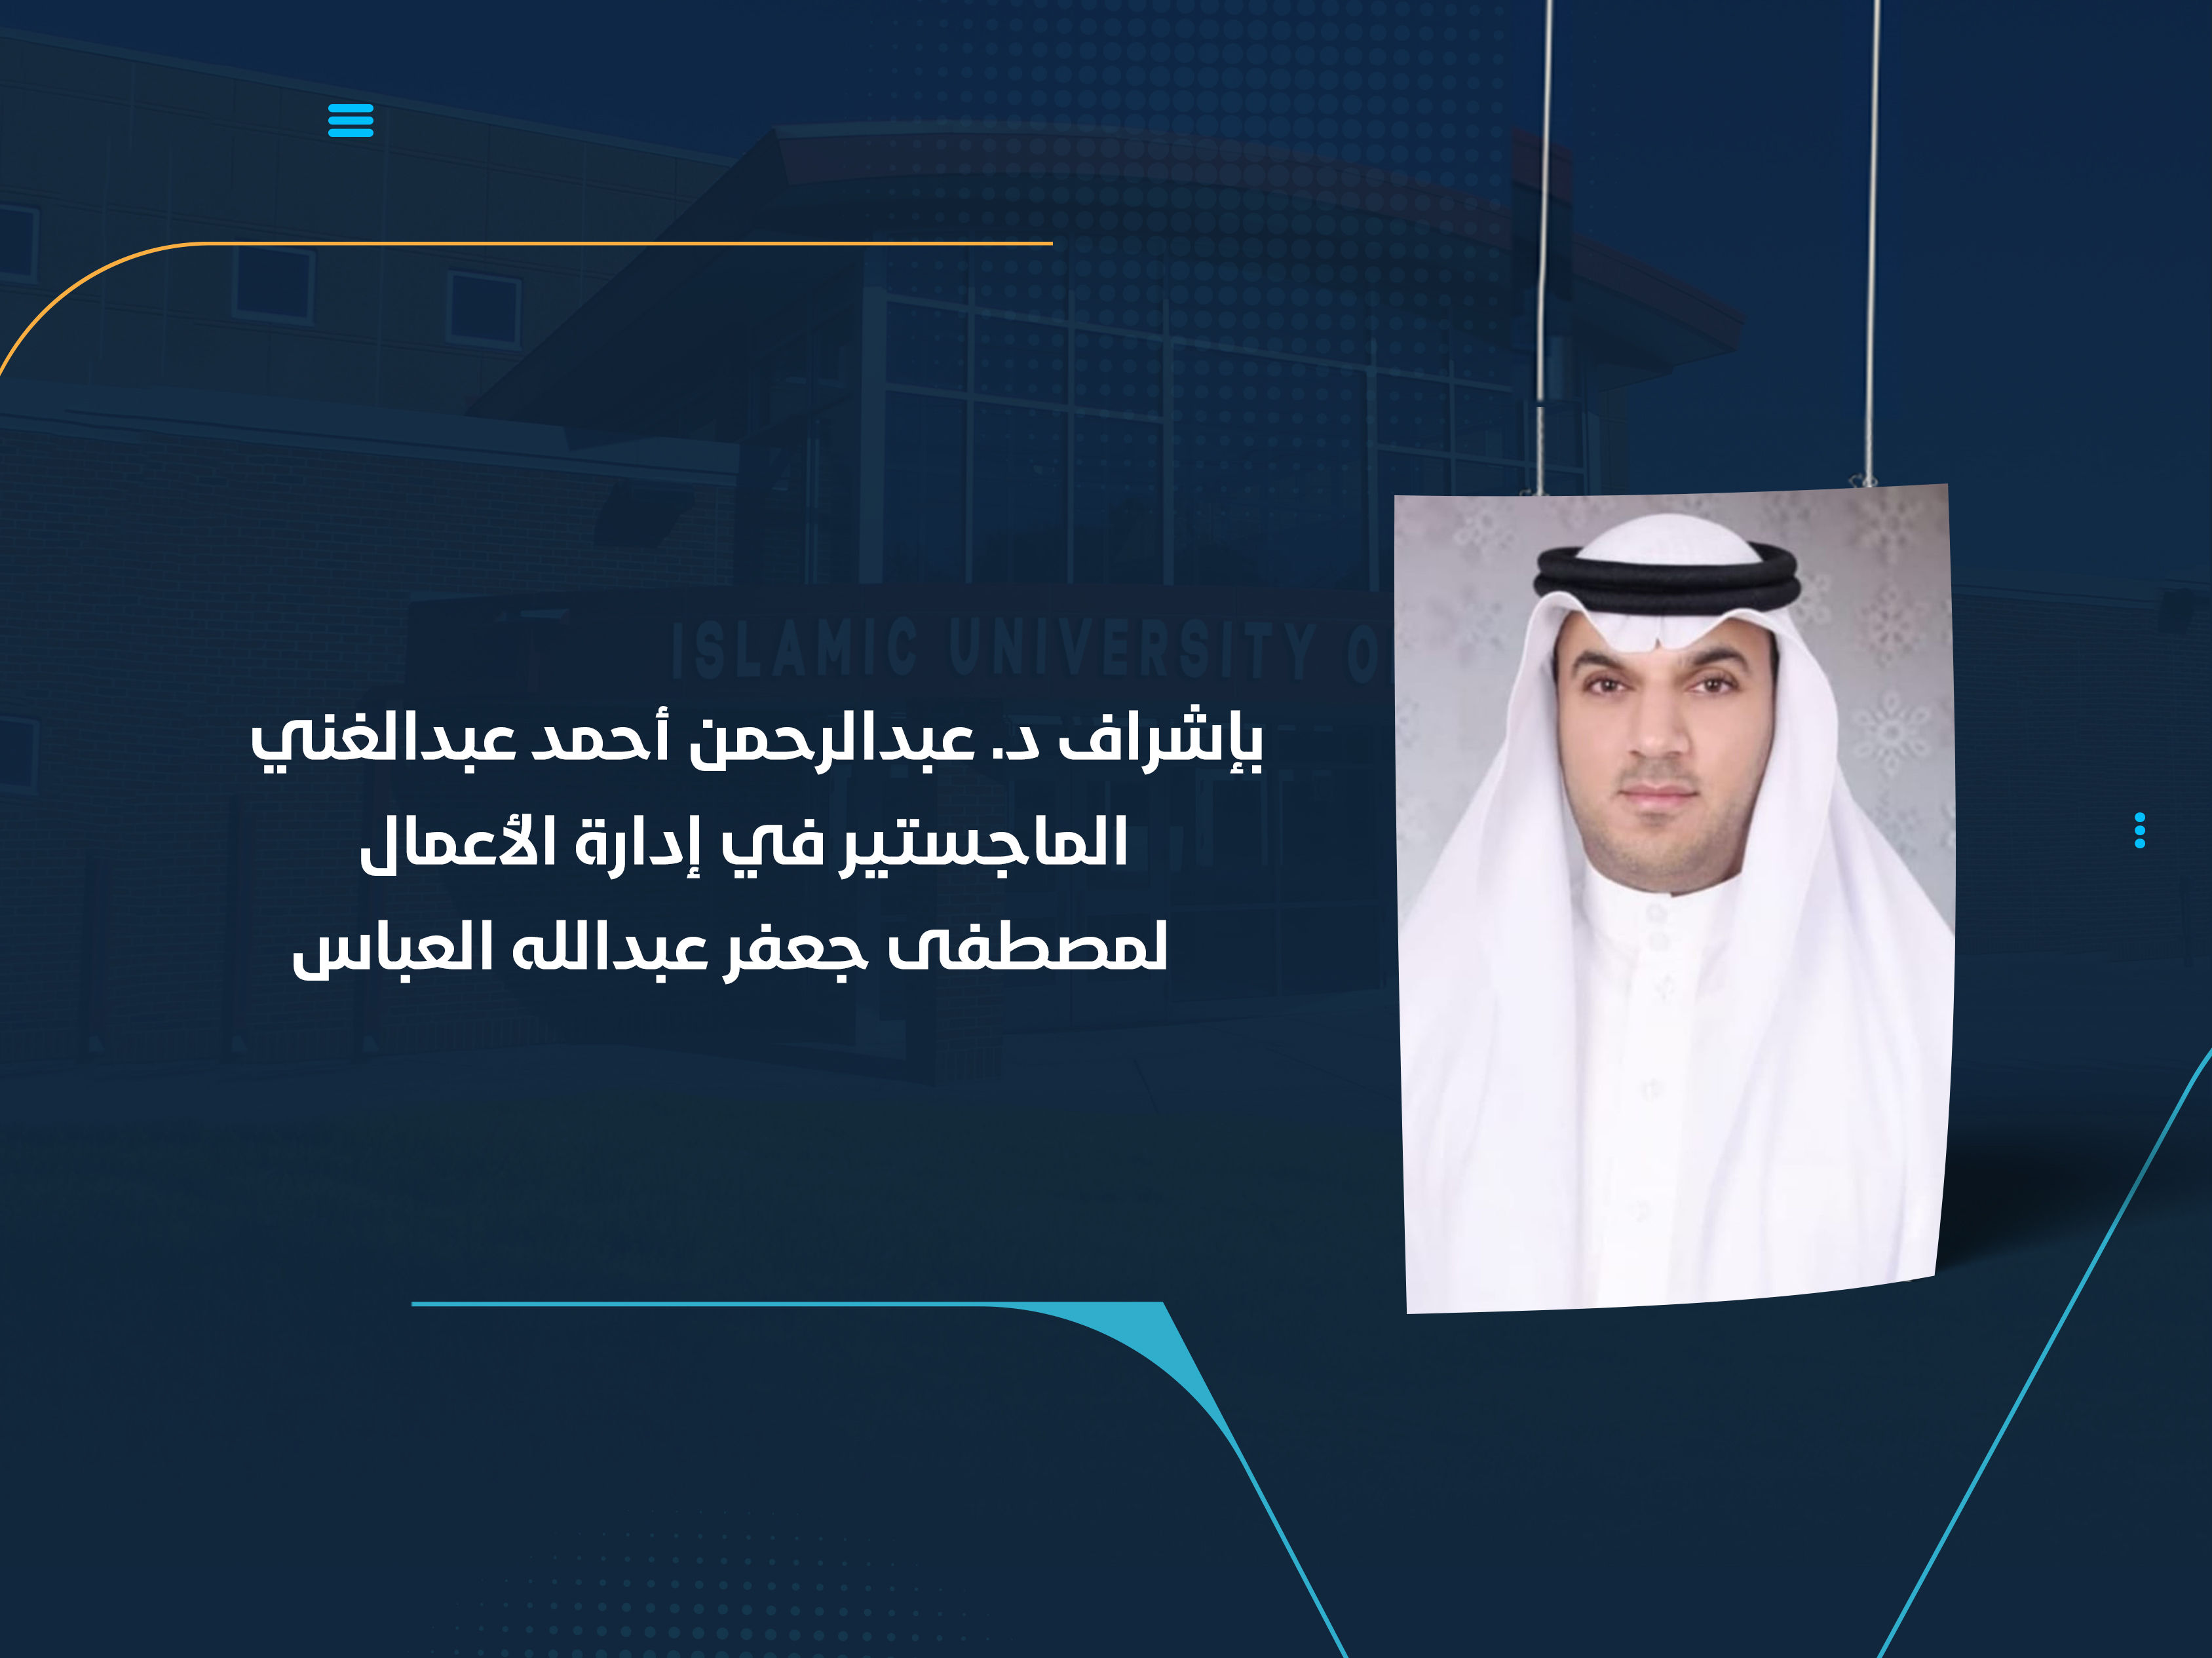 الماجستير في إدارة الأعمال لمصطفى جعفر عبدالله العباس